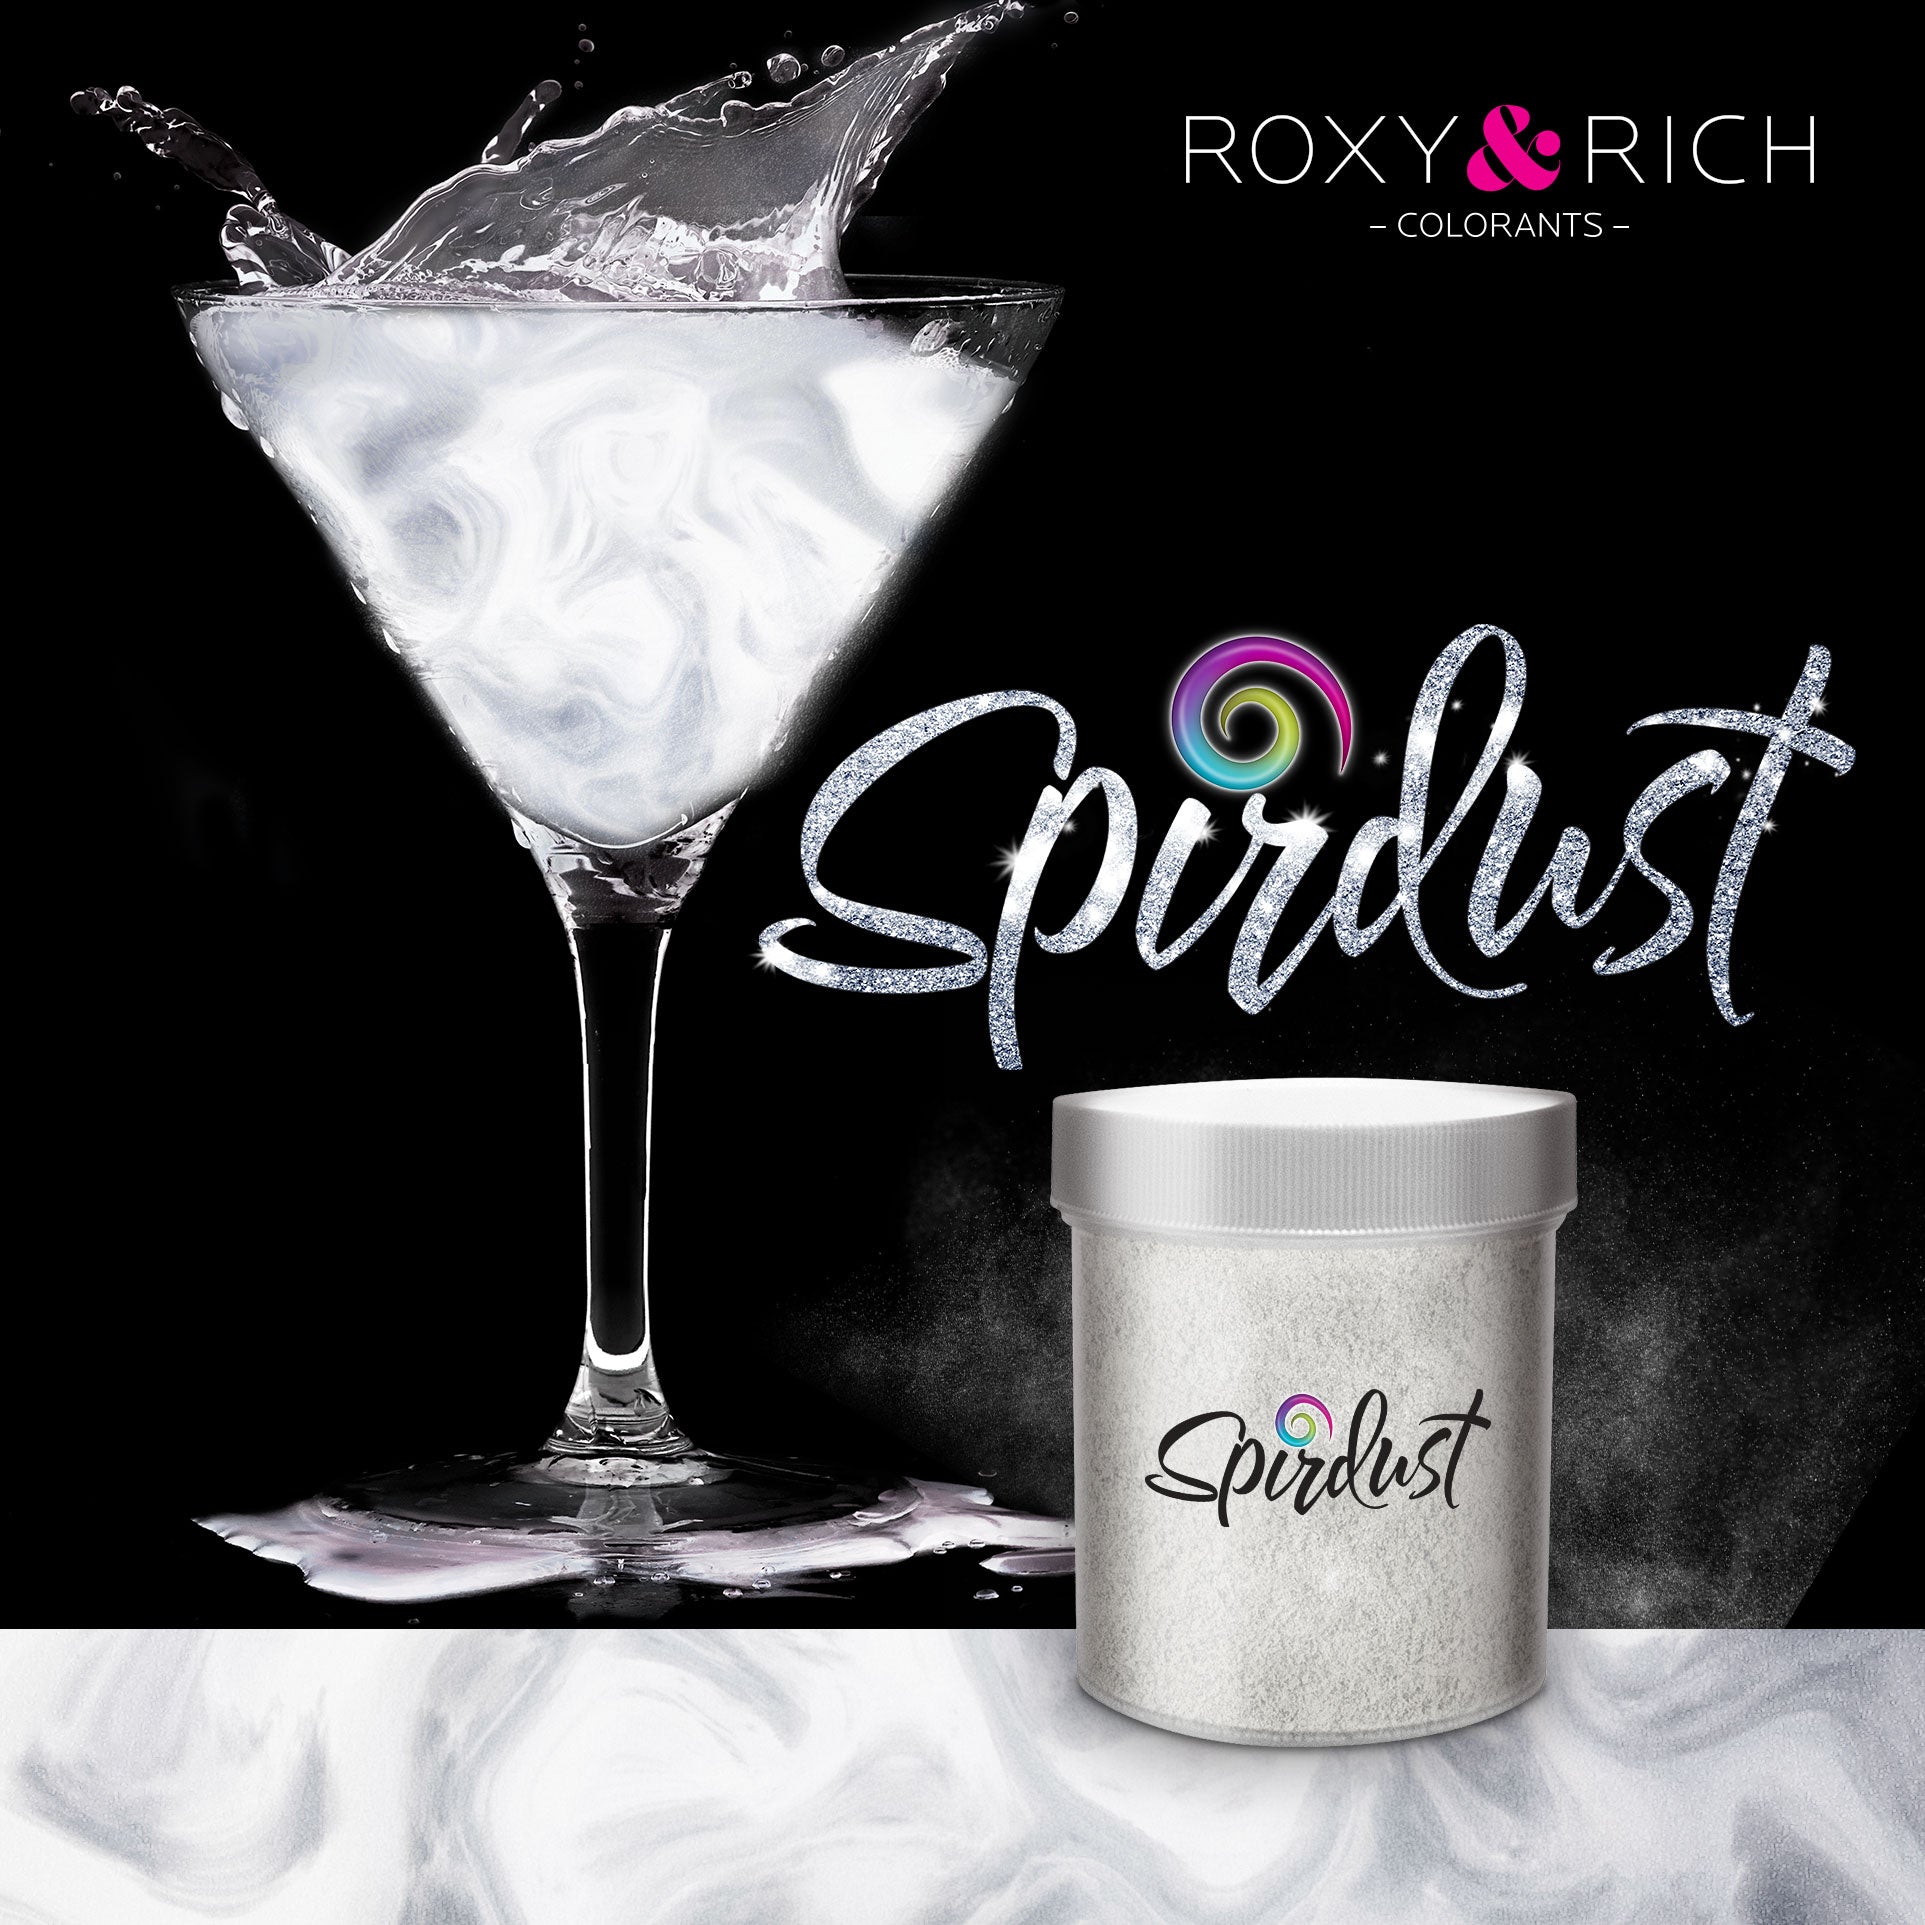 Colorants scintillants pour boissons - 17 coloris - Roxy & Rich